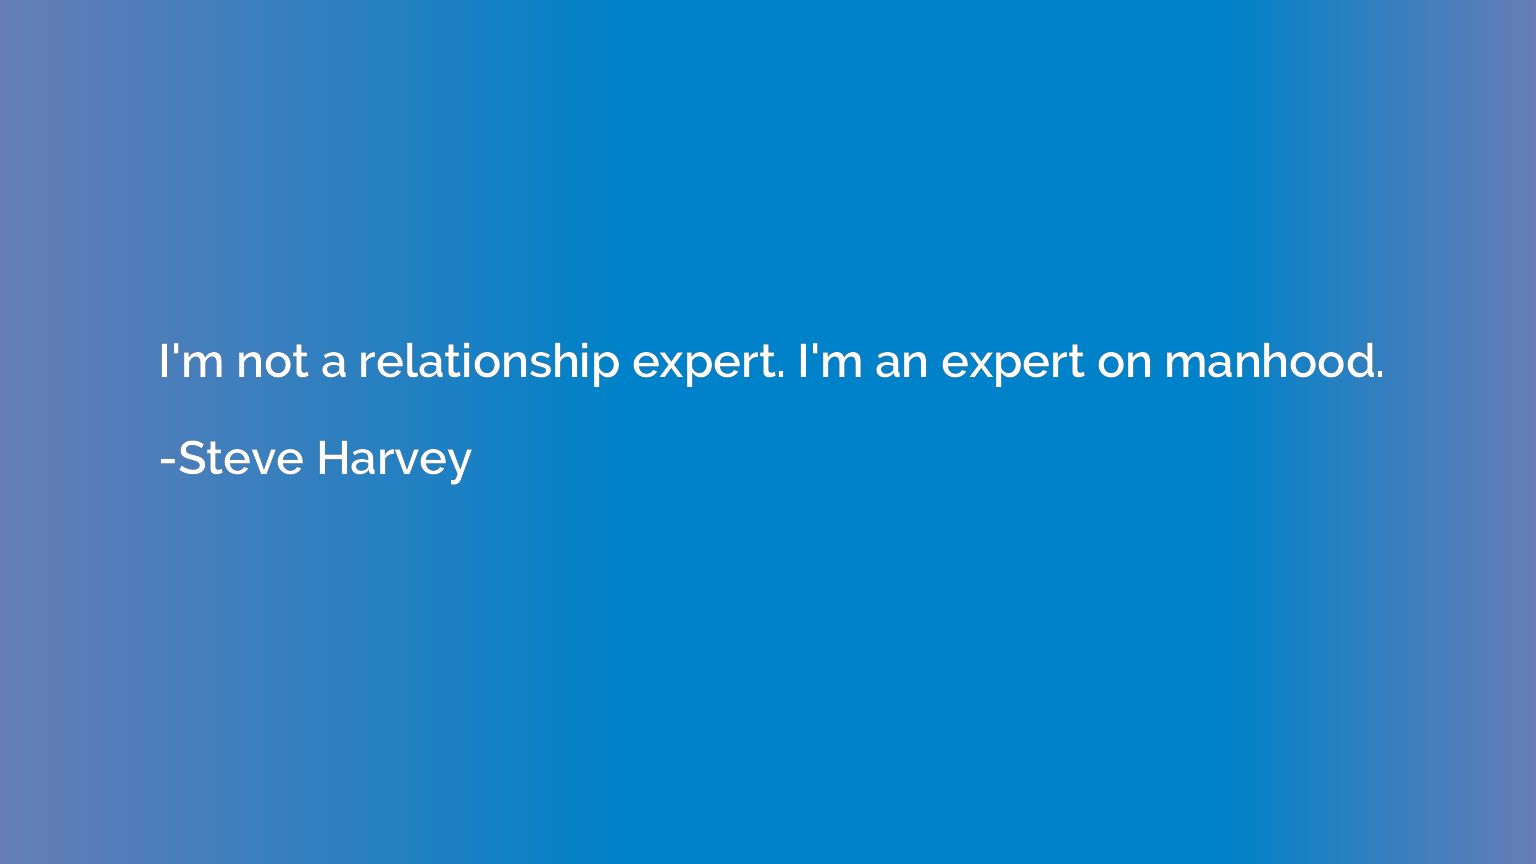 I'm not a relationship expert. I'm an expert on manhood.